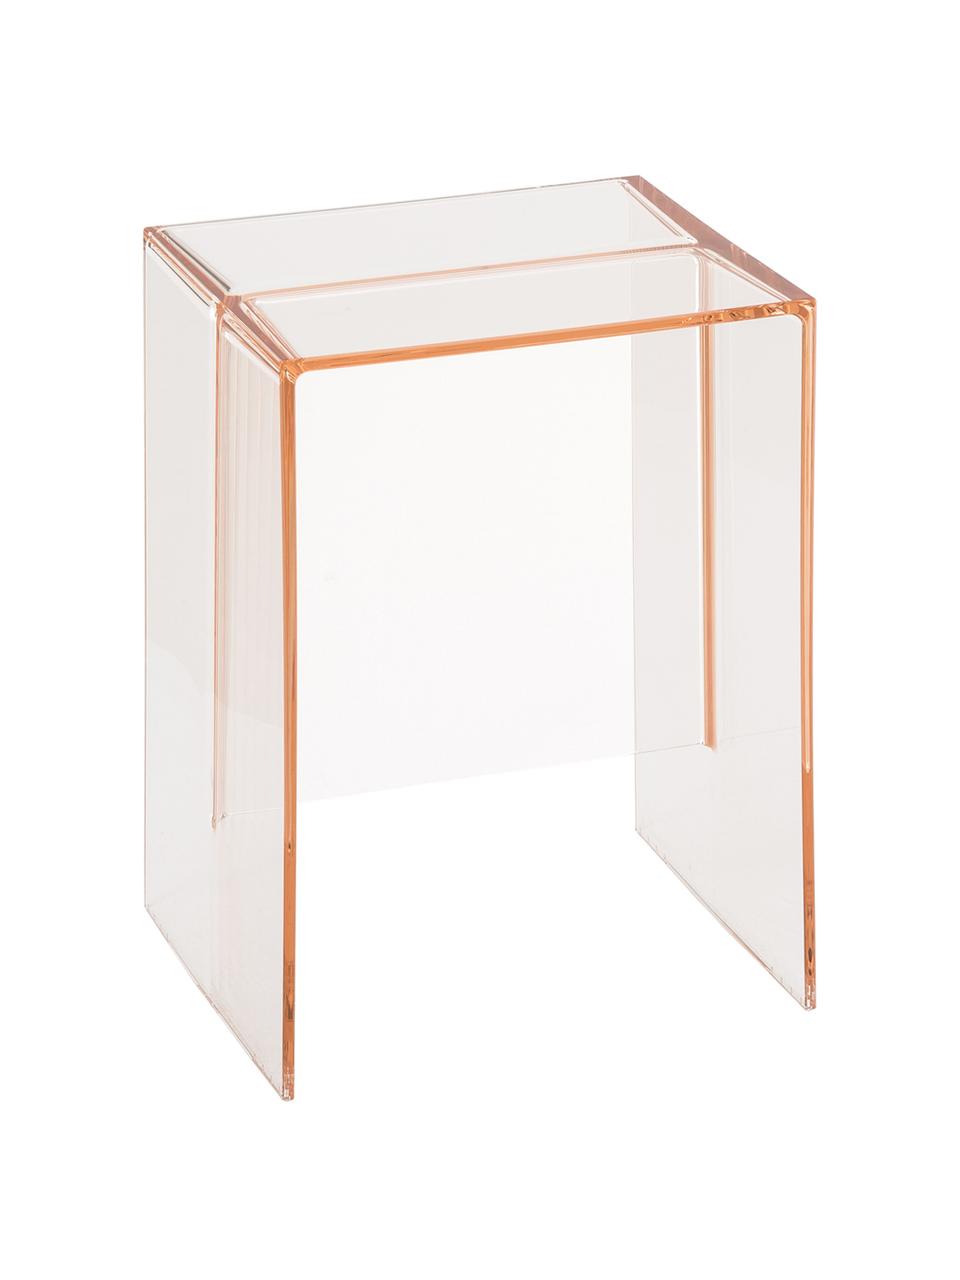 Design Beistelltisch Max-Beam, Durchfärbtes, transparentes Polypropylen, Rosa, B 33 x H 47 cm